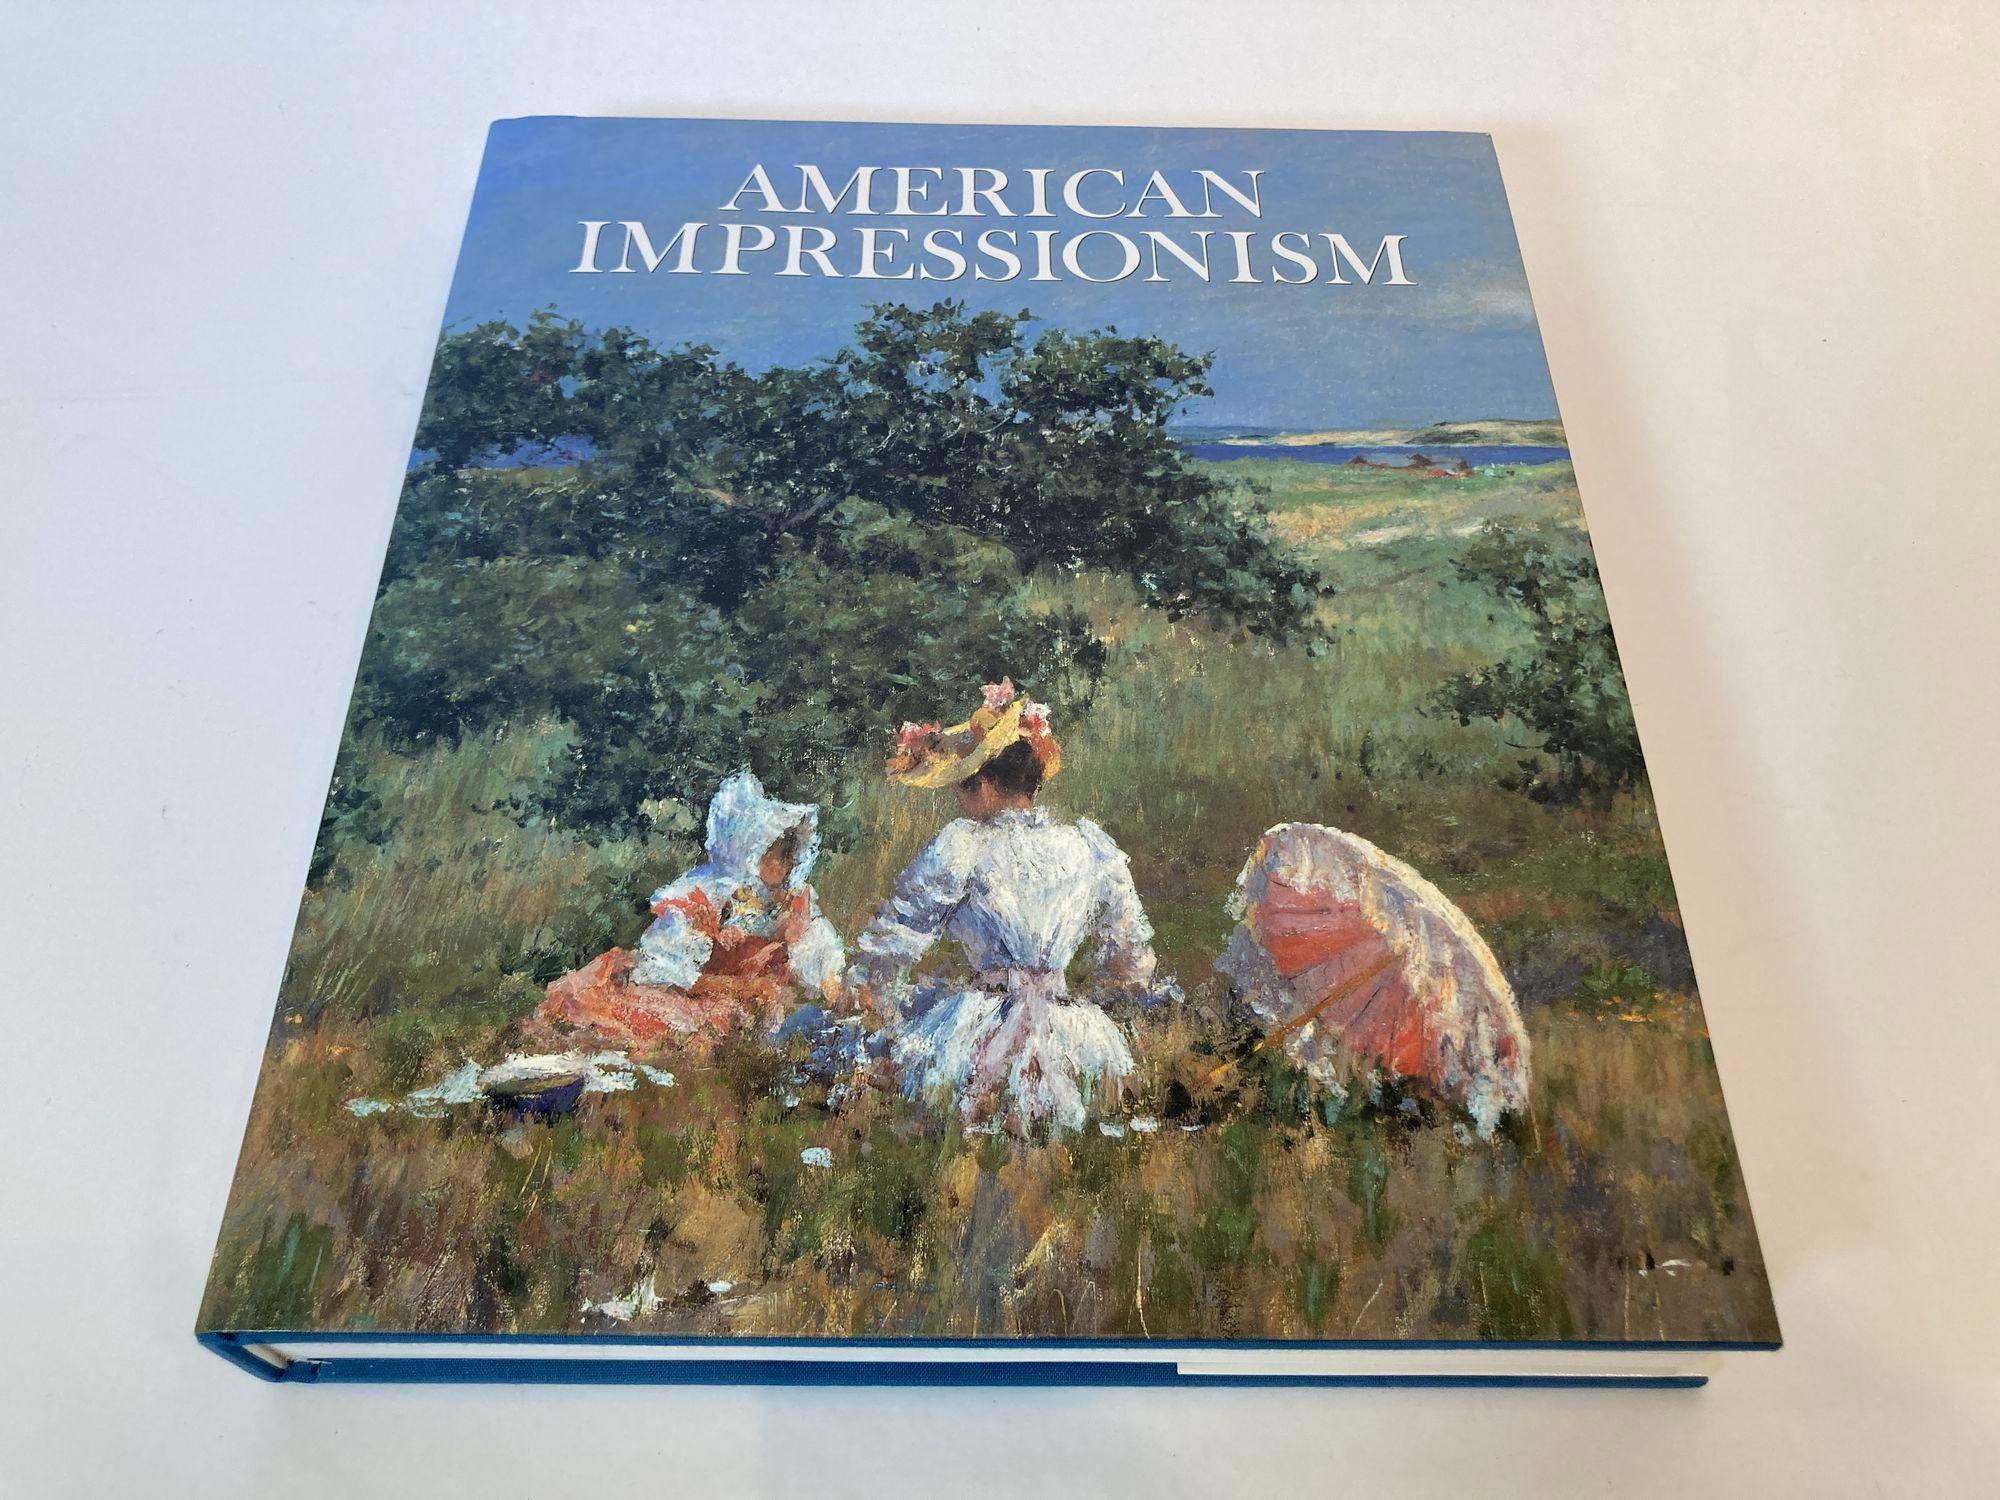 Impressionnisme américain Livre relié de William H. Gerdts.
American Impressionism Book by William H. Gerdts Hardcover Book.
Abondamment illustré de plus de 400 peintures de 125 artistes différents, ce volume contient des photographies documentaires